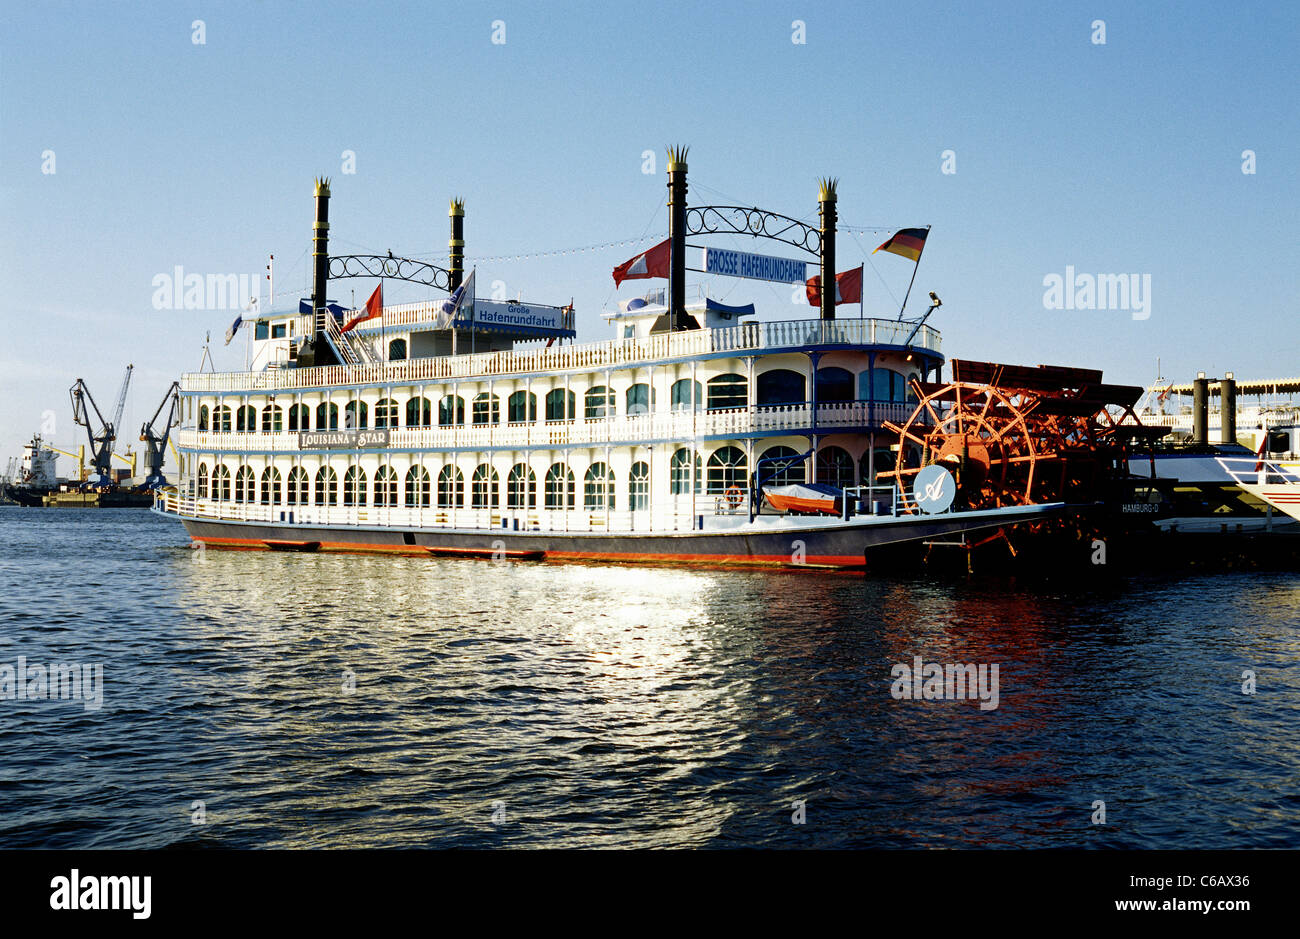 Sternwheeler Louisiana Star nel porto di Amburgo. Foto Stock